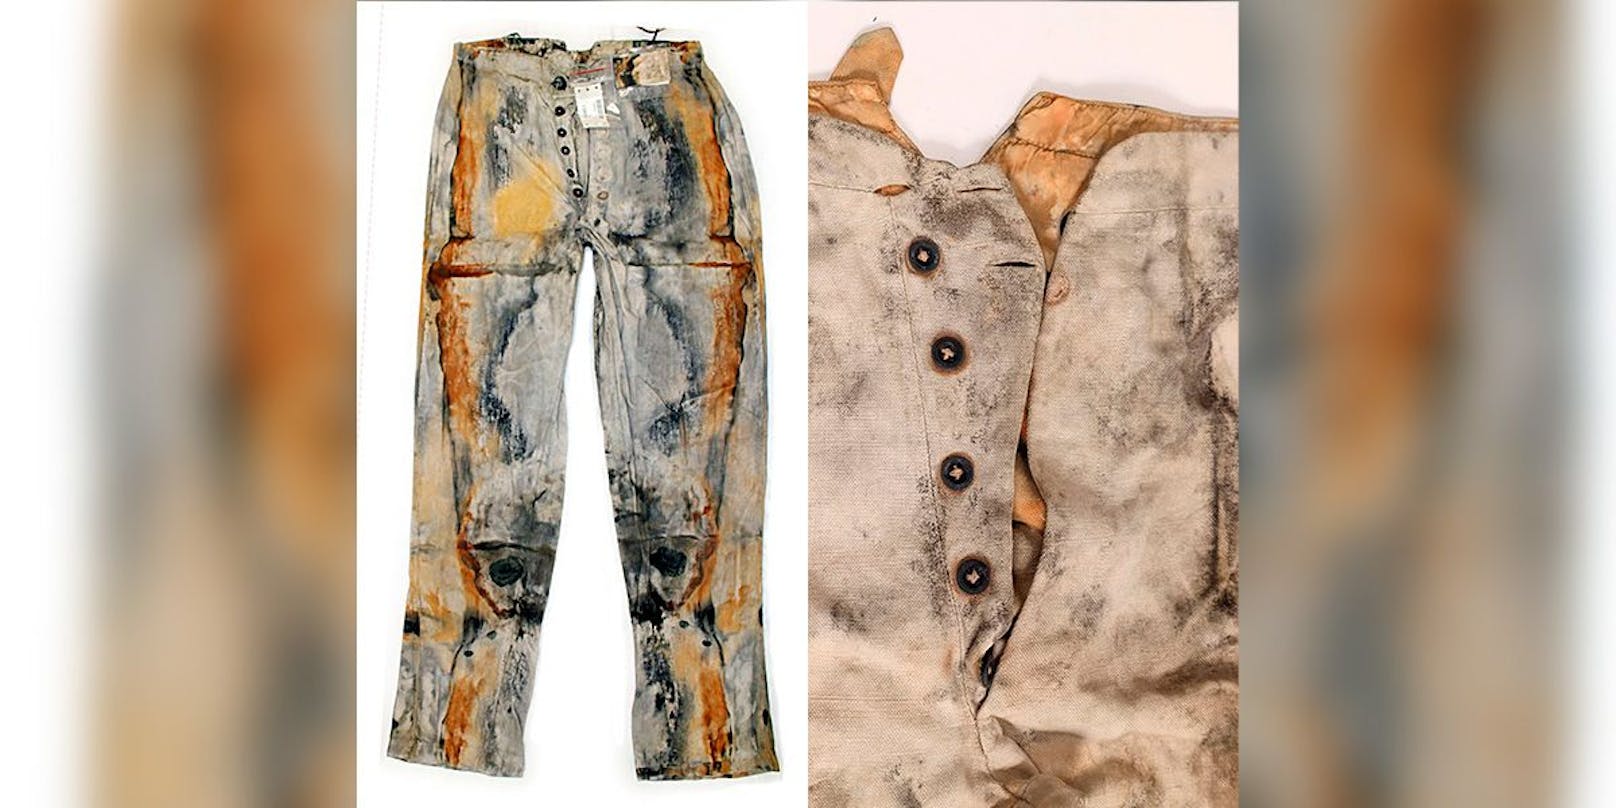 Schnitt und Design entsprechen dem von Levi Strauss – allerdings stellte dieser seine erste Jeans erst 16 Jahre nach dem Schiffsunglück her.